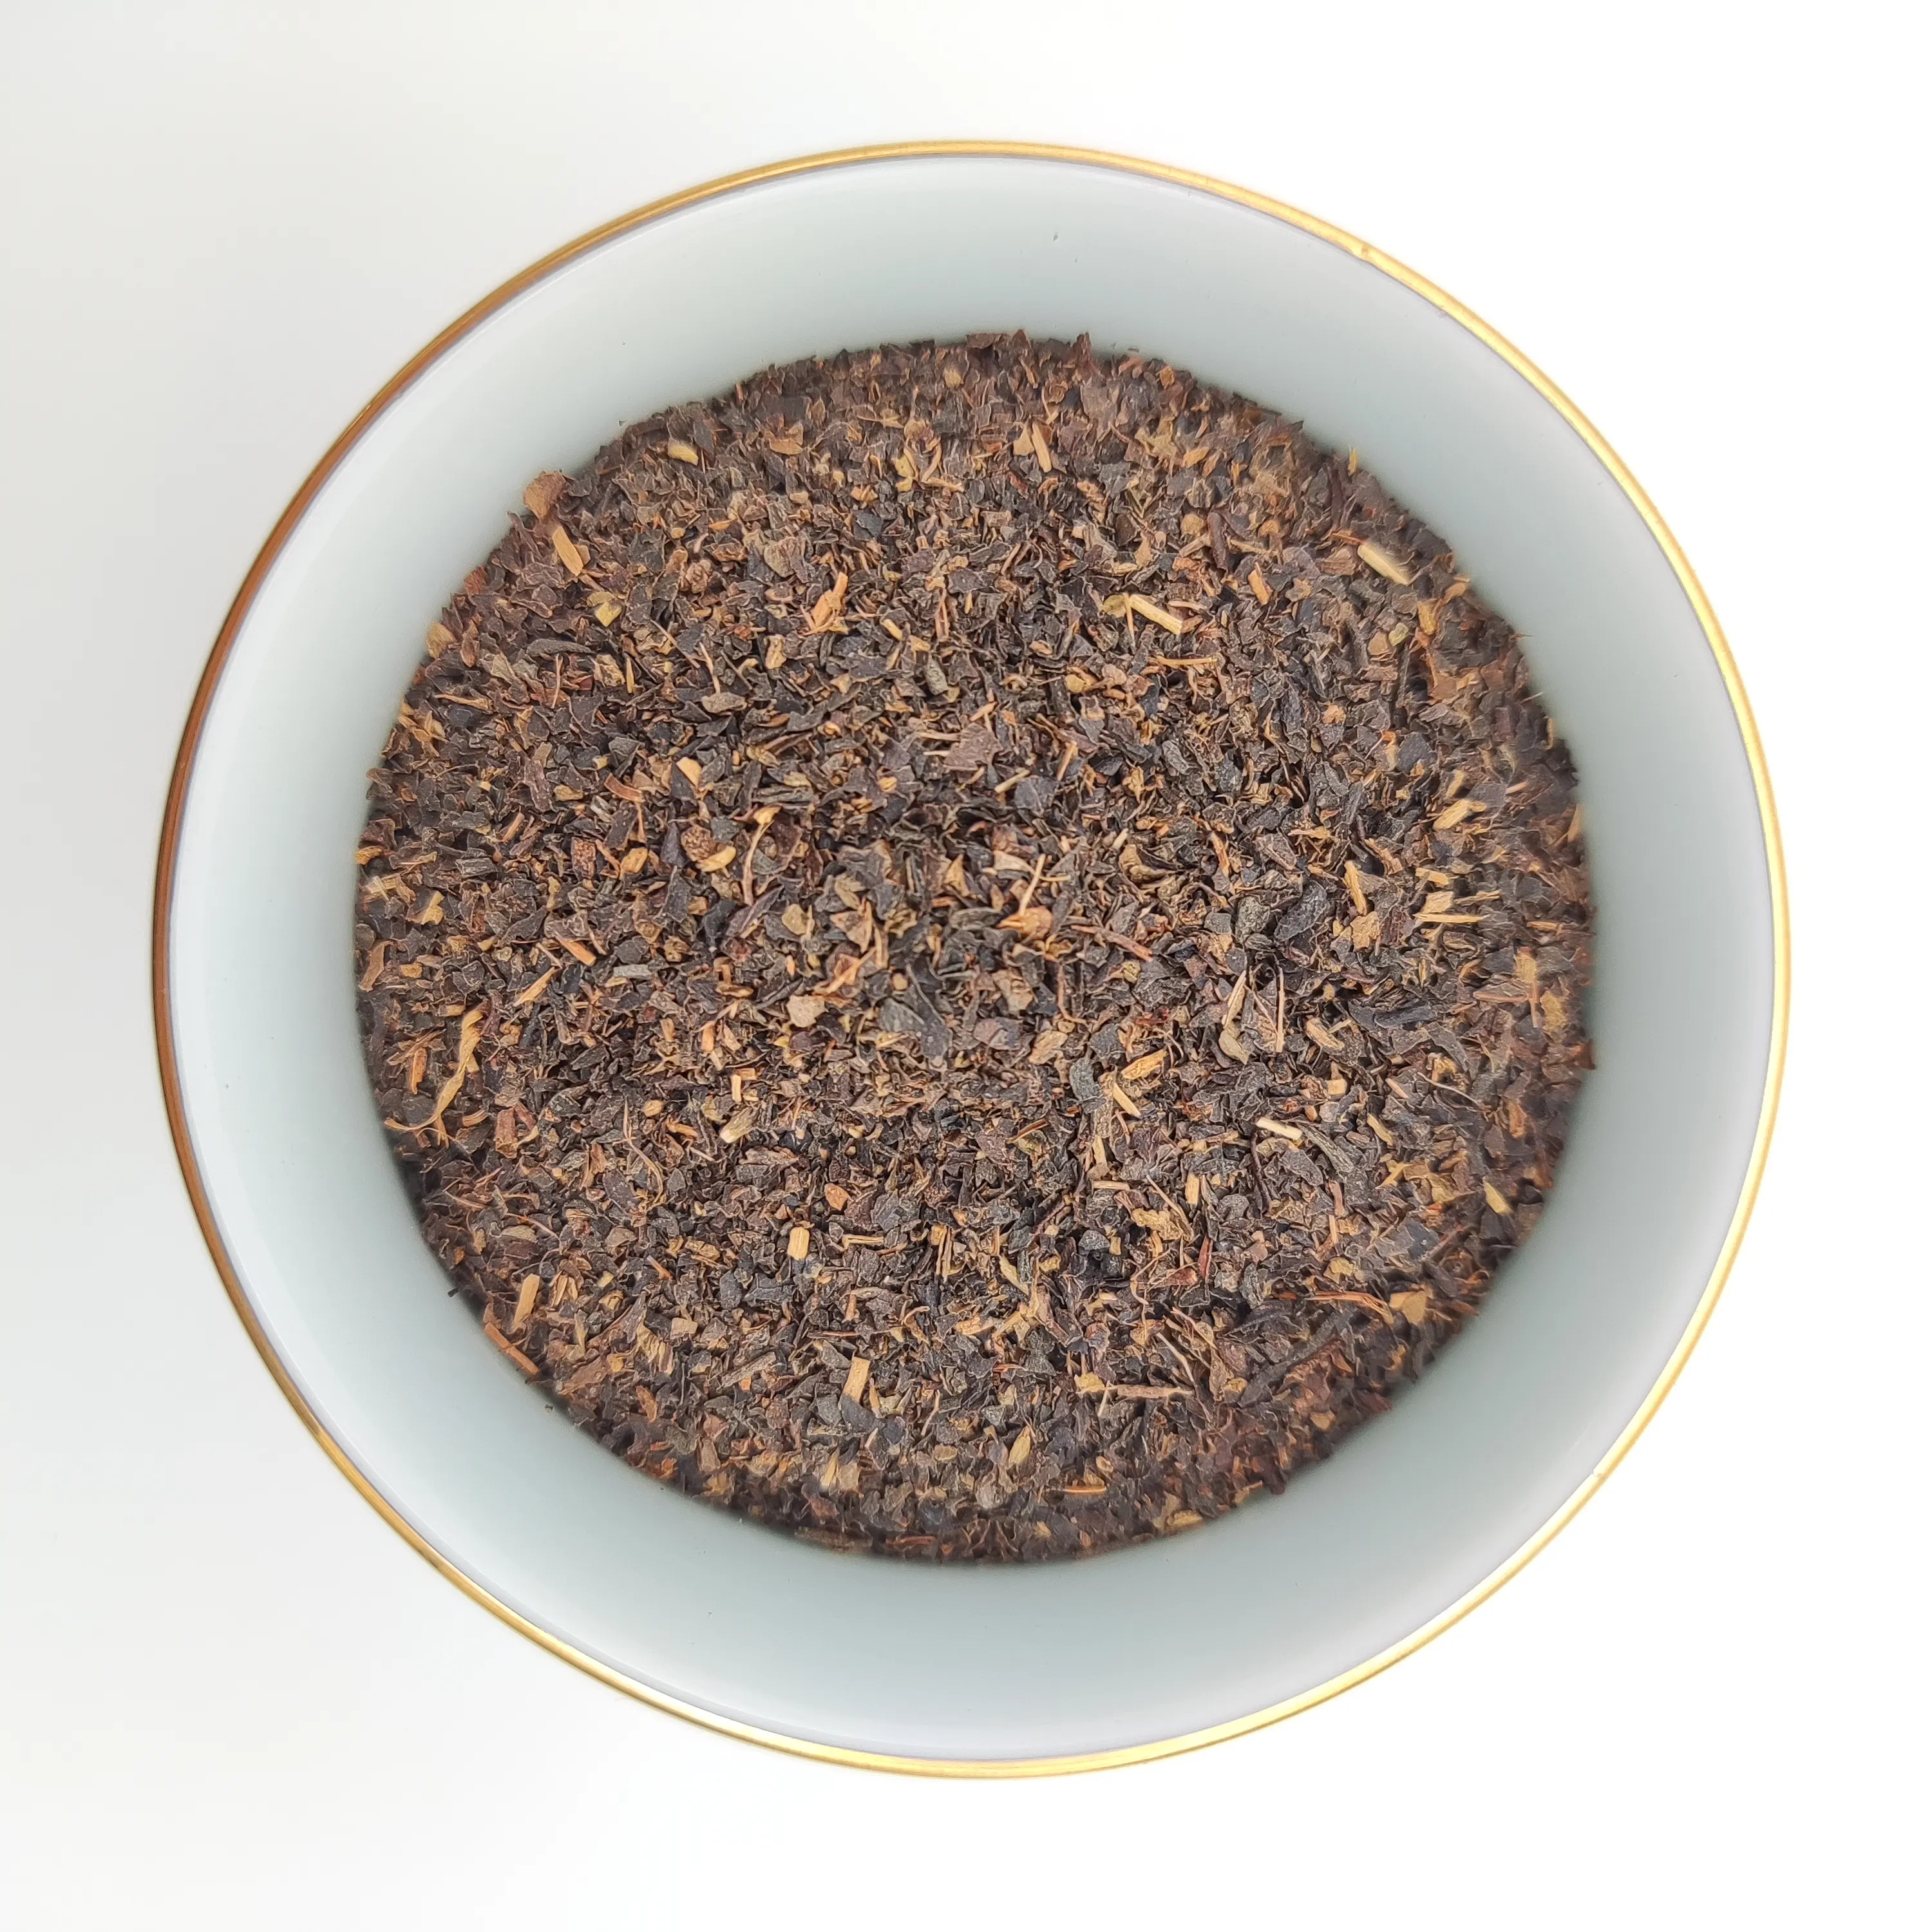 चाय निर्माता सस्ते दाम में उच्च गुणवत्ता वाली थोक थोक ईयू मानक काली चाय बेचते हैं